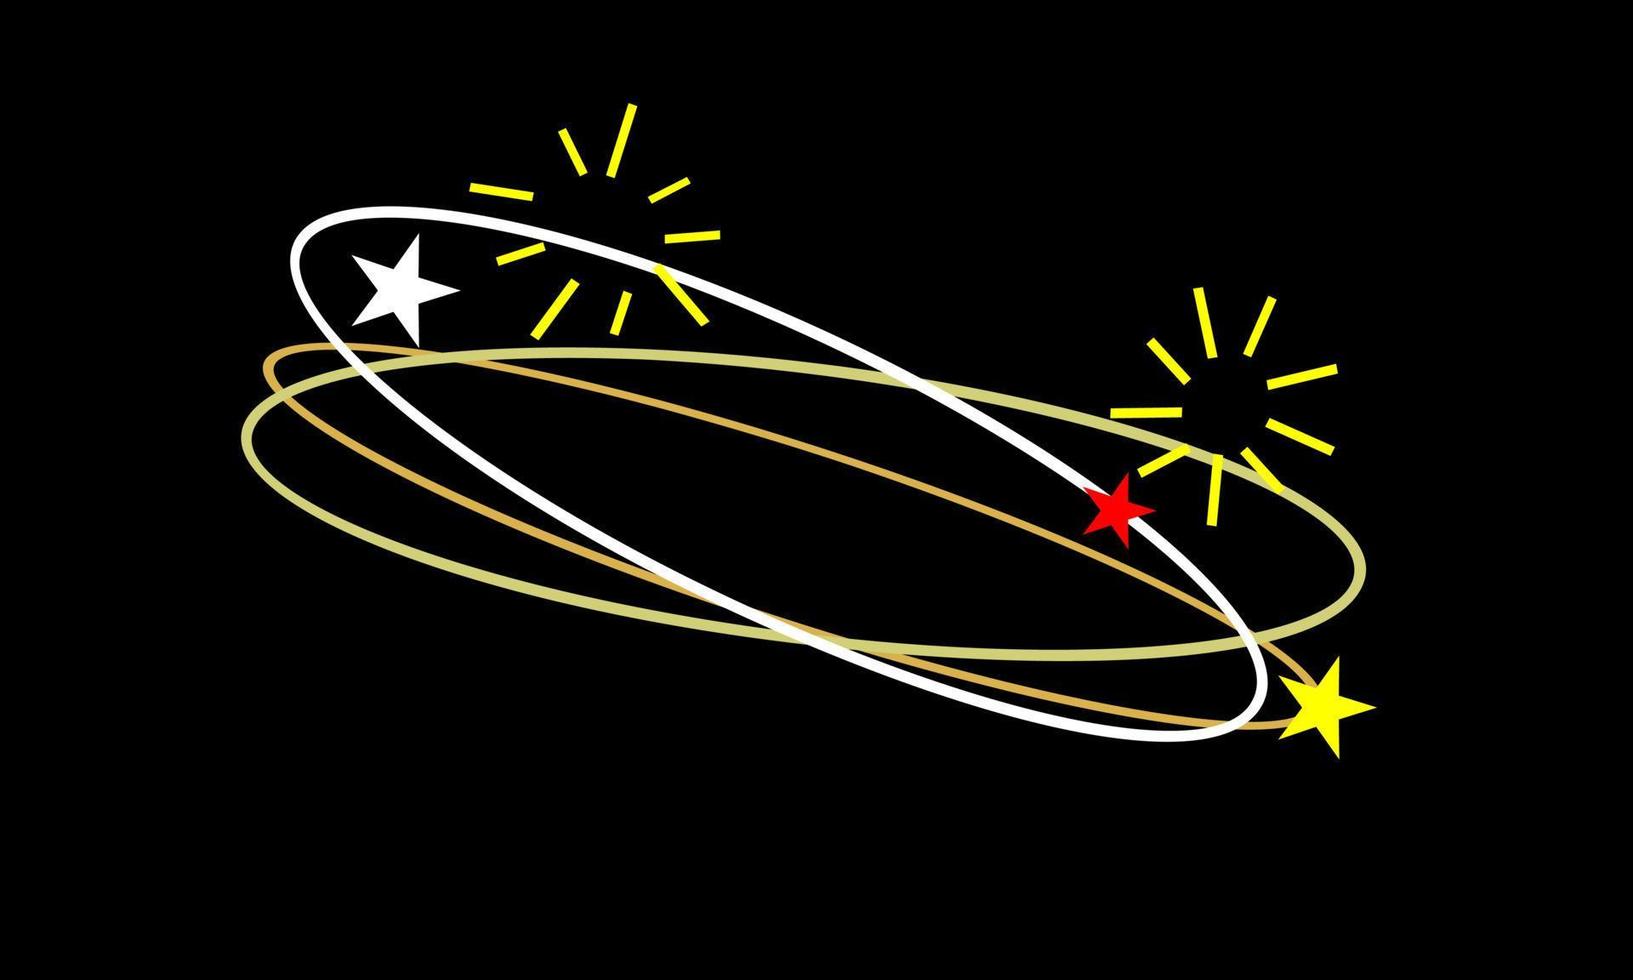 yrande uttryck. flygande stjärnor med omloppsbana spår vit, röd, gul färg på svart bakgrund. vektor